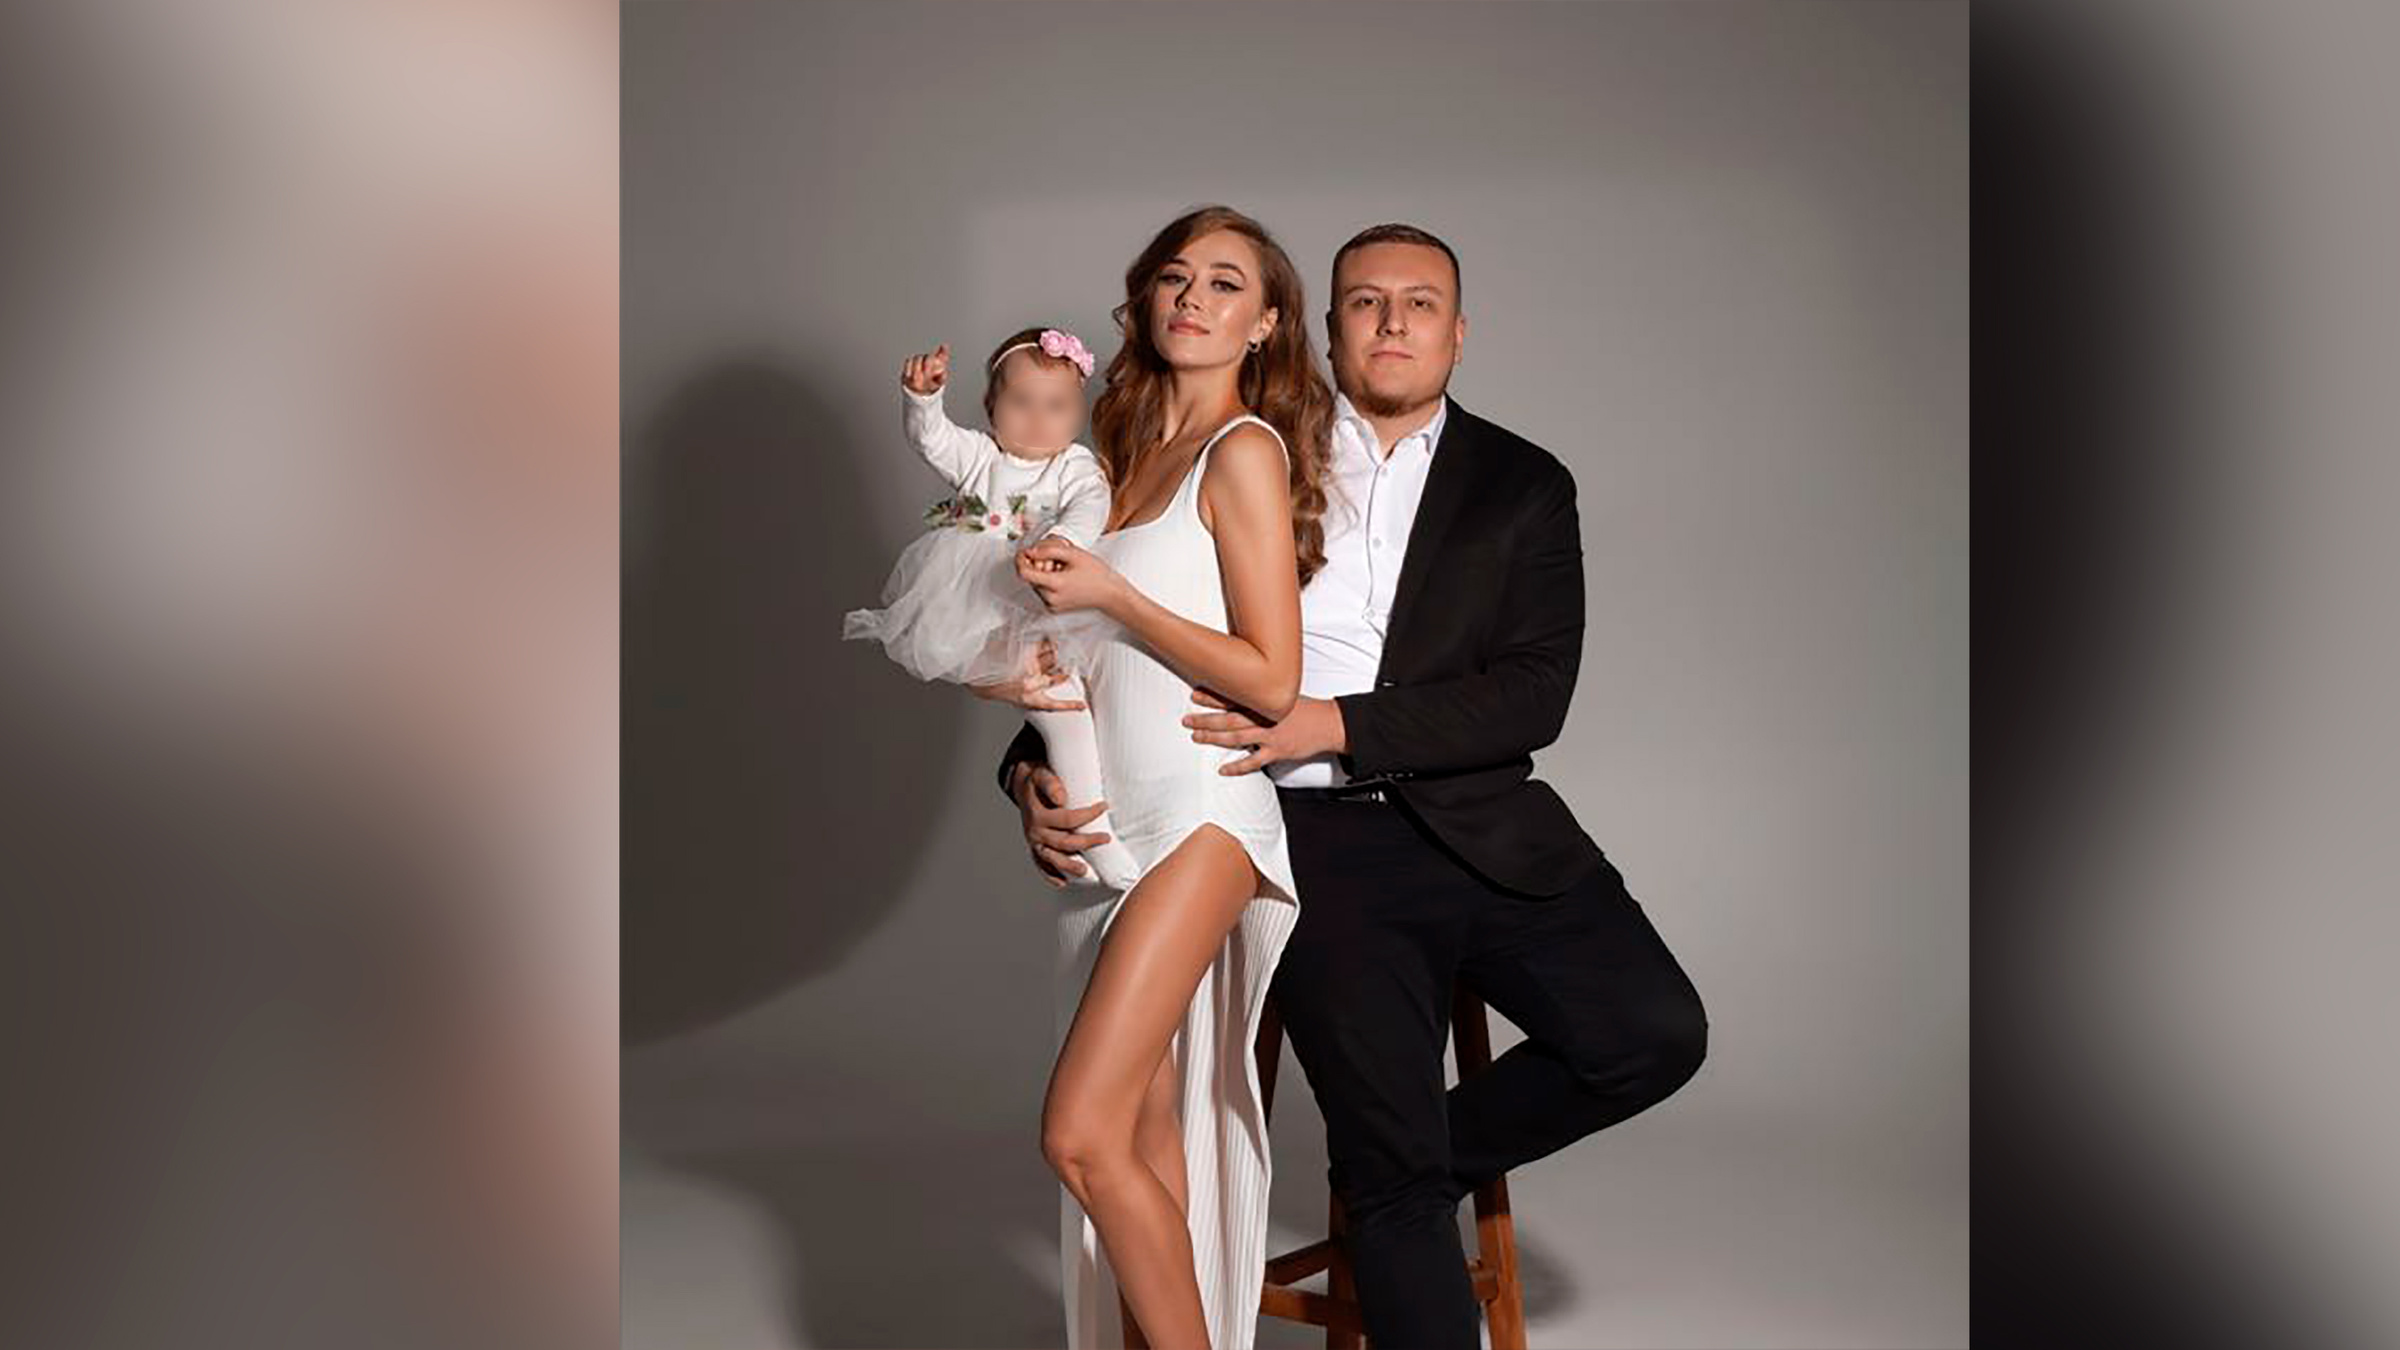 Константин Немичев с женой Анной Леонович и дочерью Полиной. © Instagram (запрещён на территории Российской Федерации) / nemi.ju